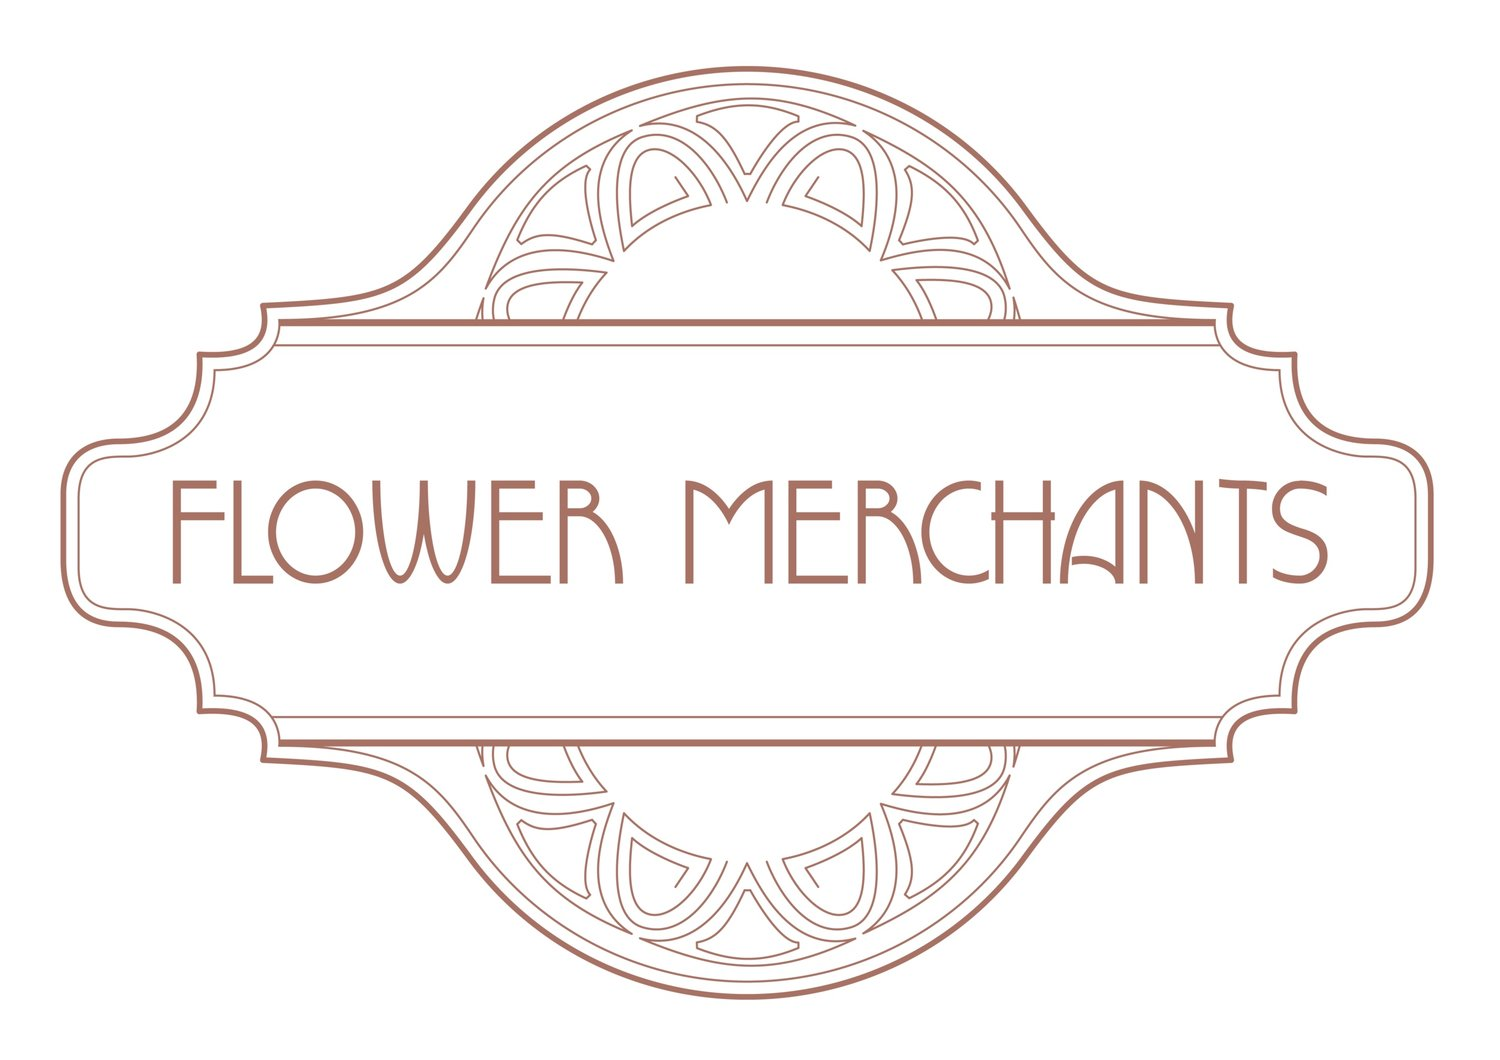 Flower Merchants